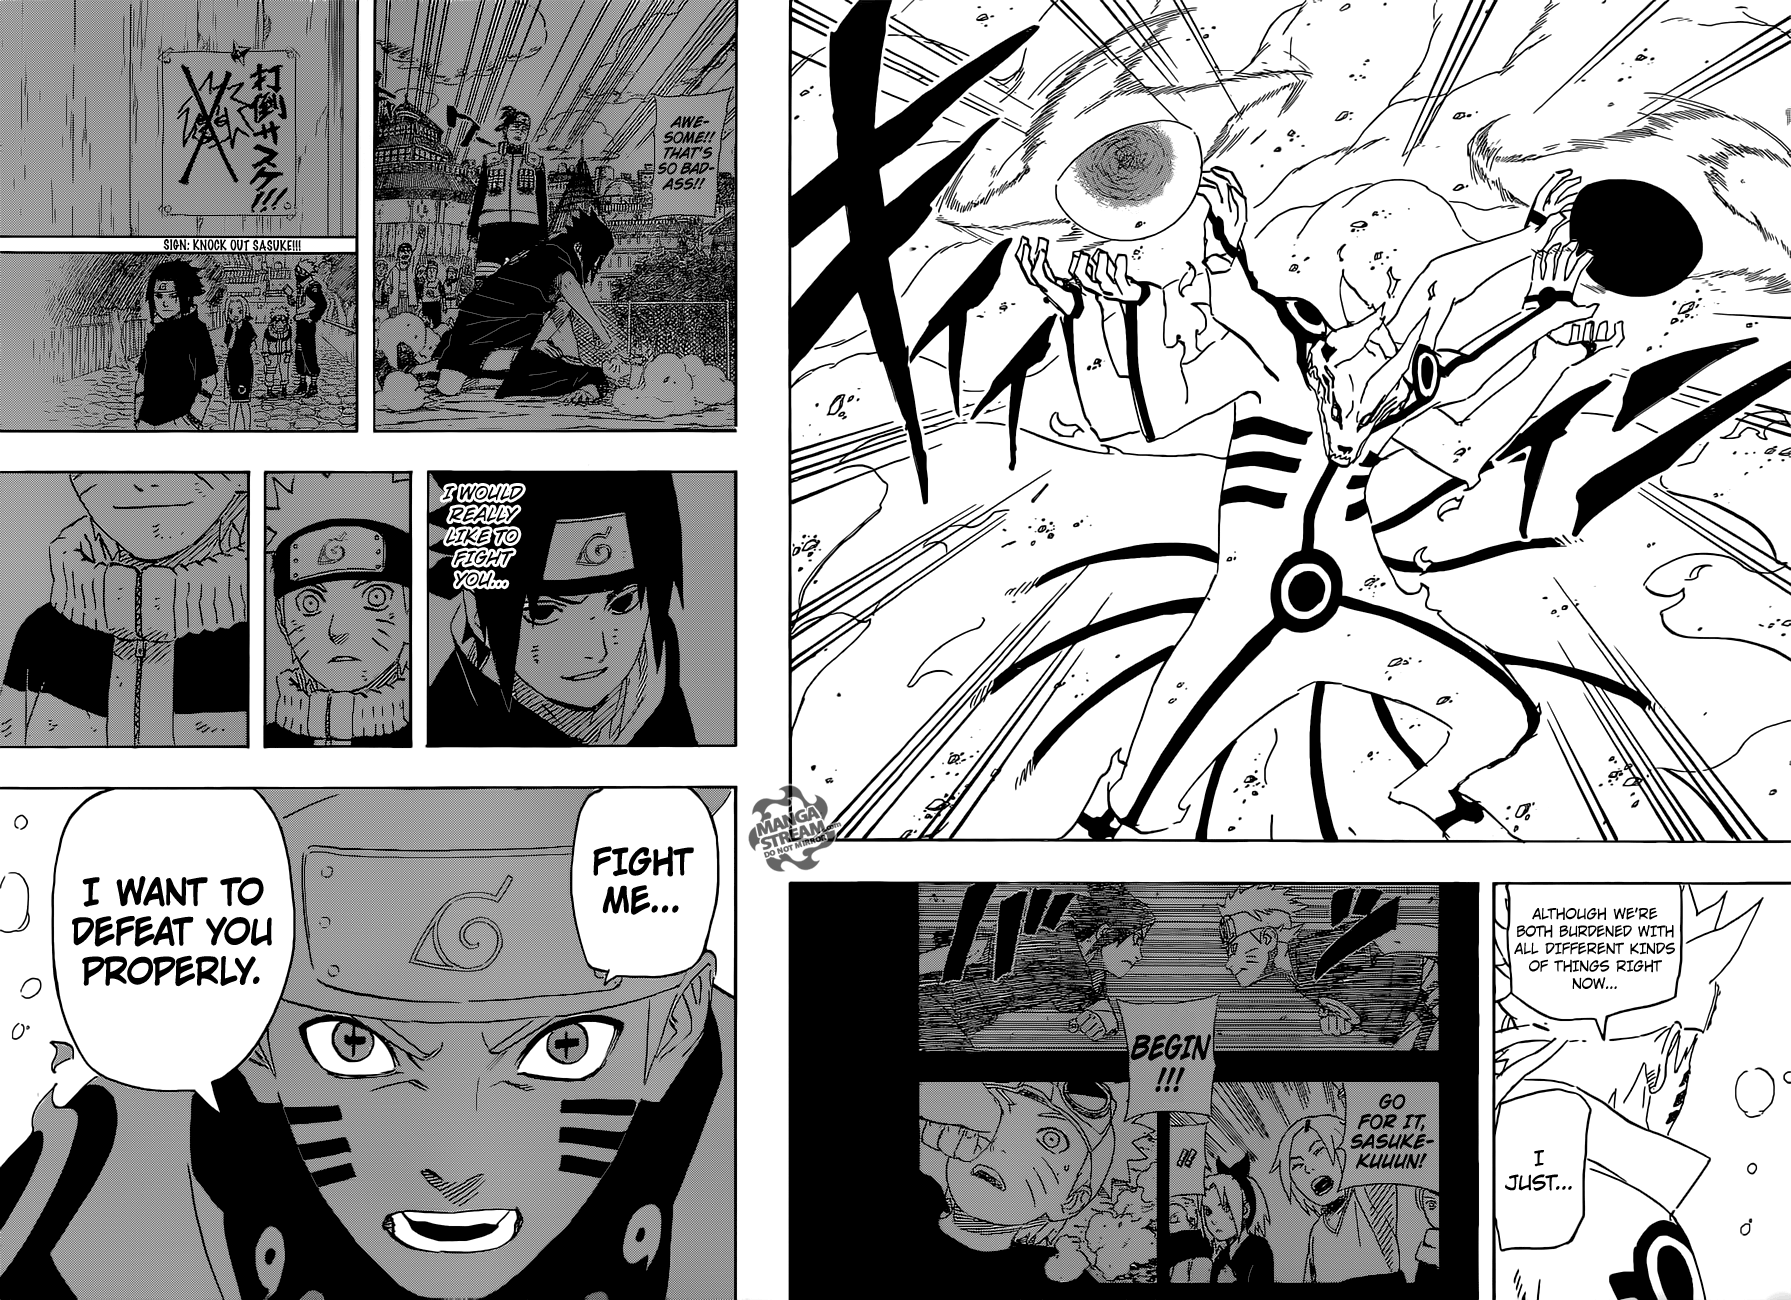 Naruto Shippuden, Vol.72 , Chapter 696 : Naruto And Sasuke (3) - Naruto Shi...